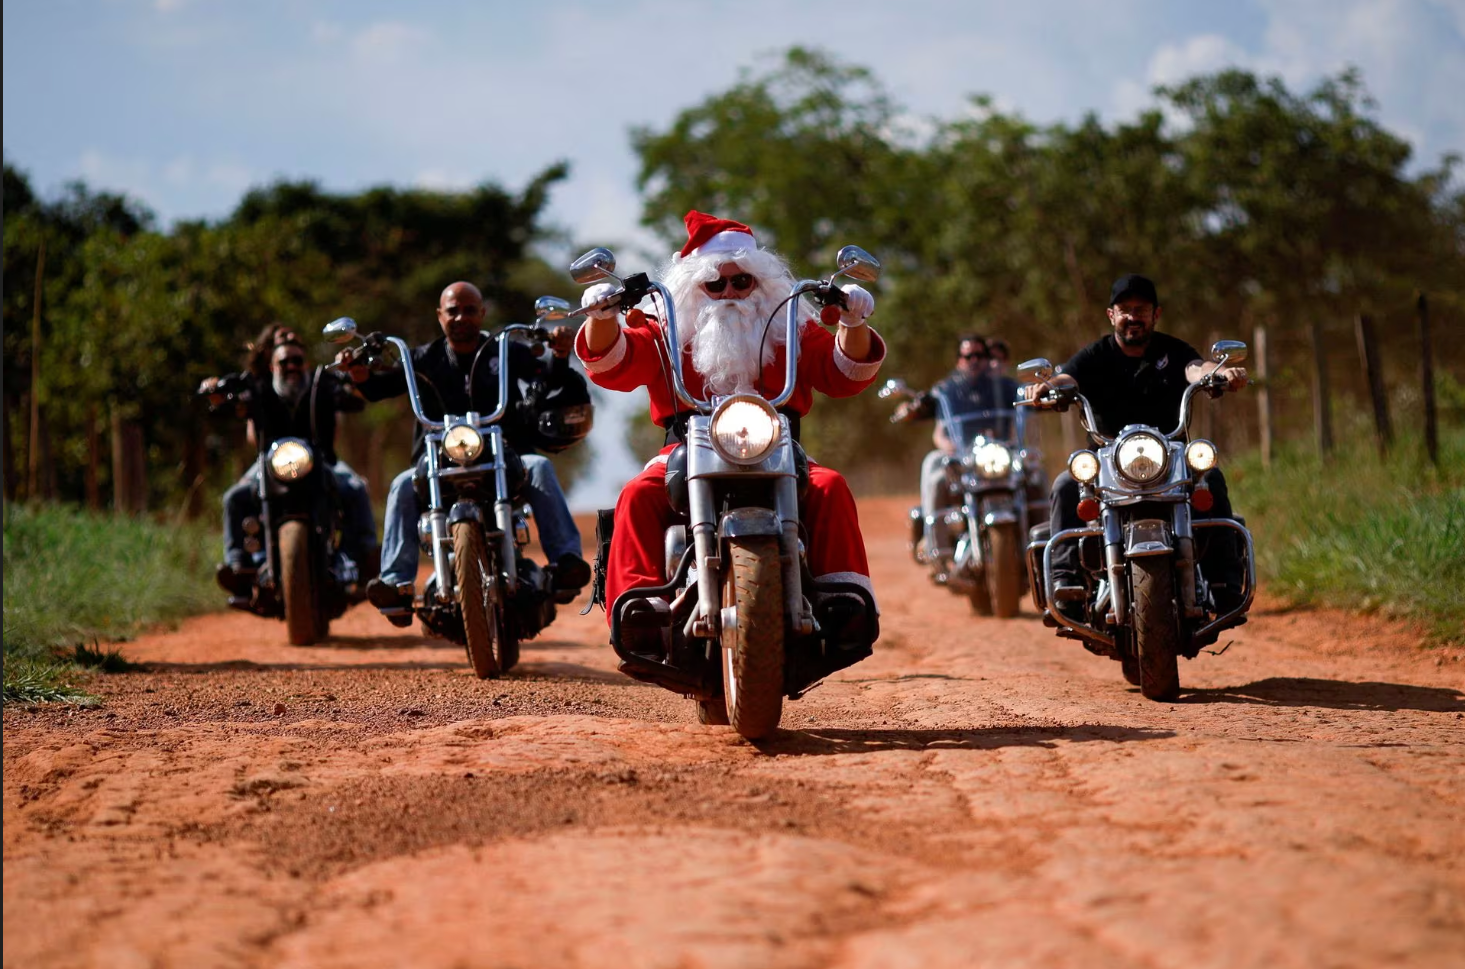 Ông Helton Garcia hóa thân thành ông già Noel và lái mô tô đi trao quà cho trẻ em tại một trường học ở vùng nông thôn Santo Antonio do Descoberto, bang Goias (Brazil) vào ngày 10-12 - Ảnh: REUTERS